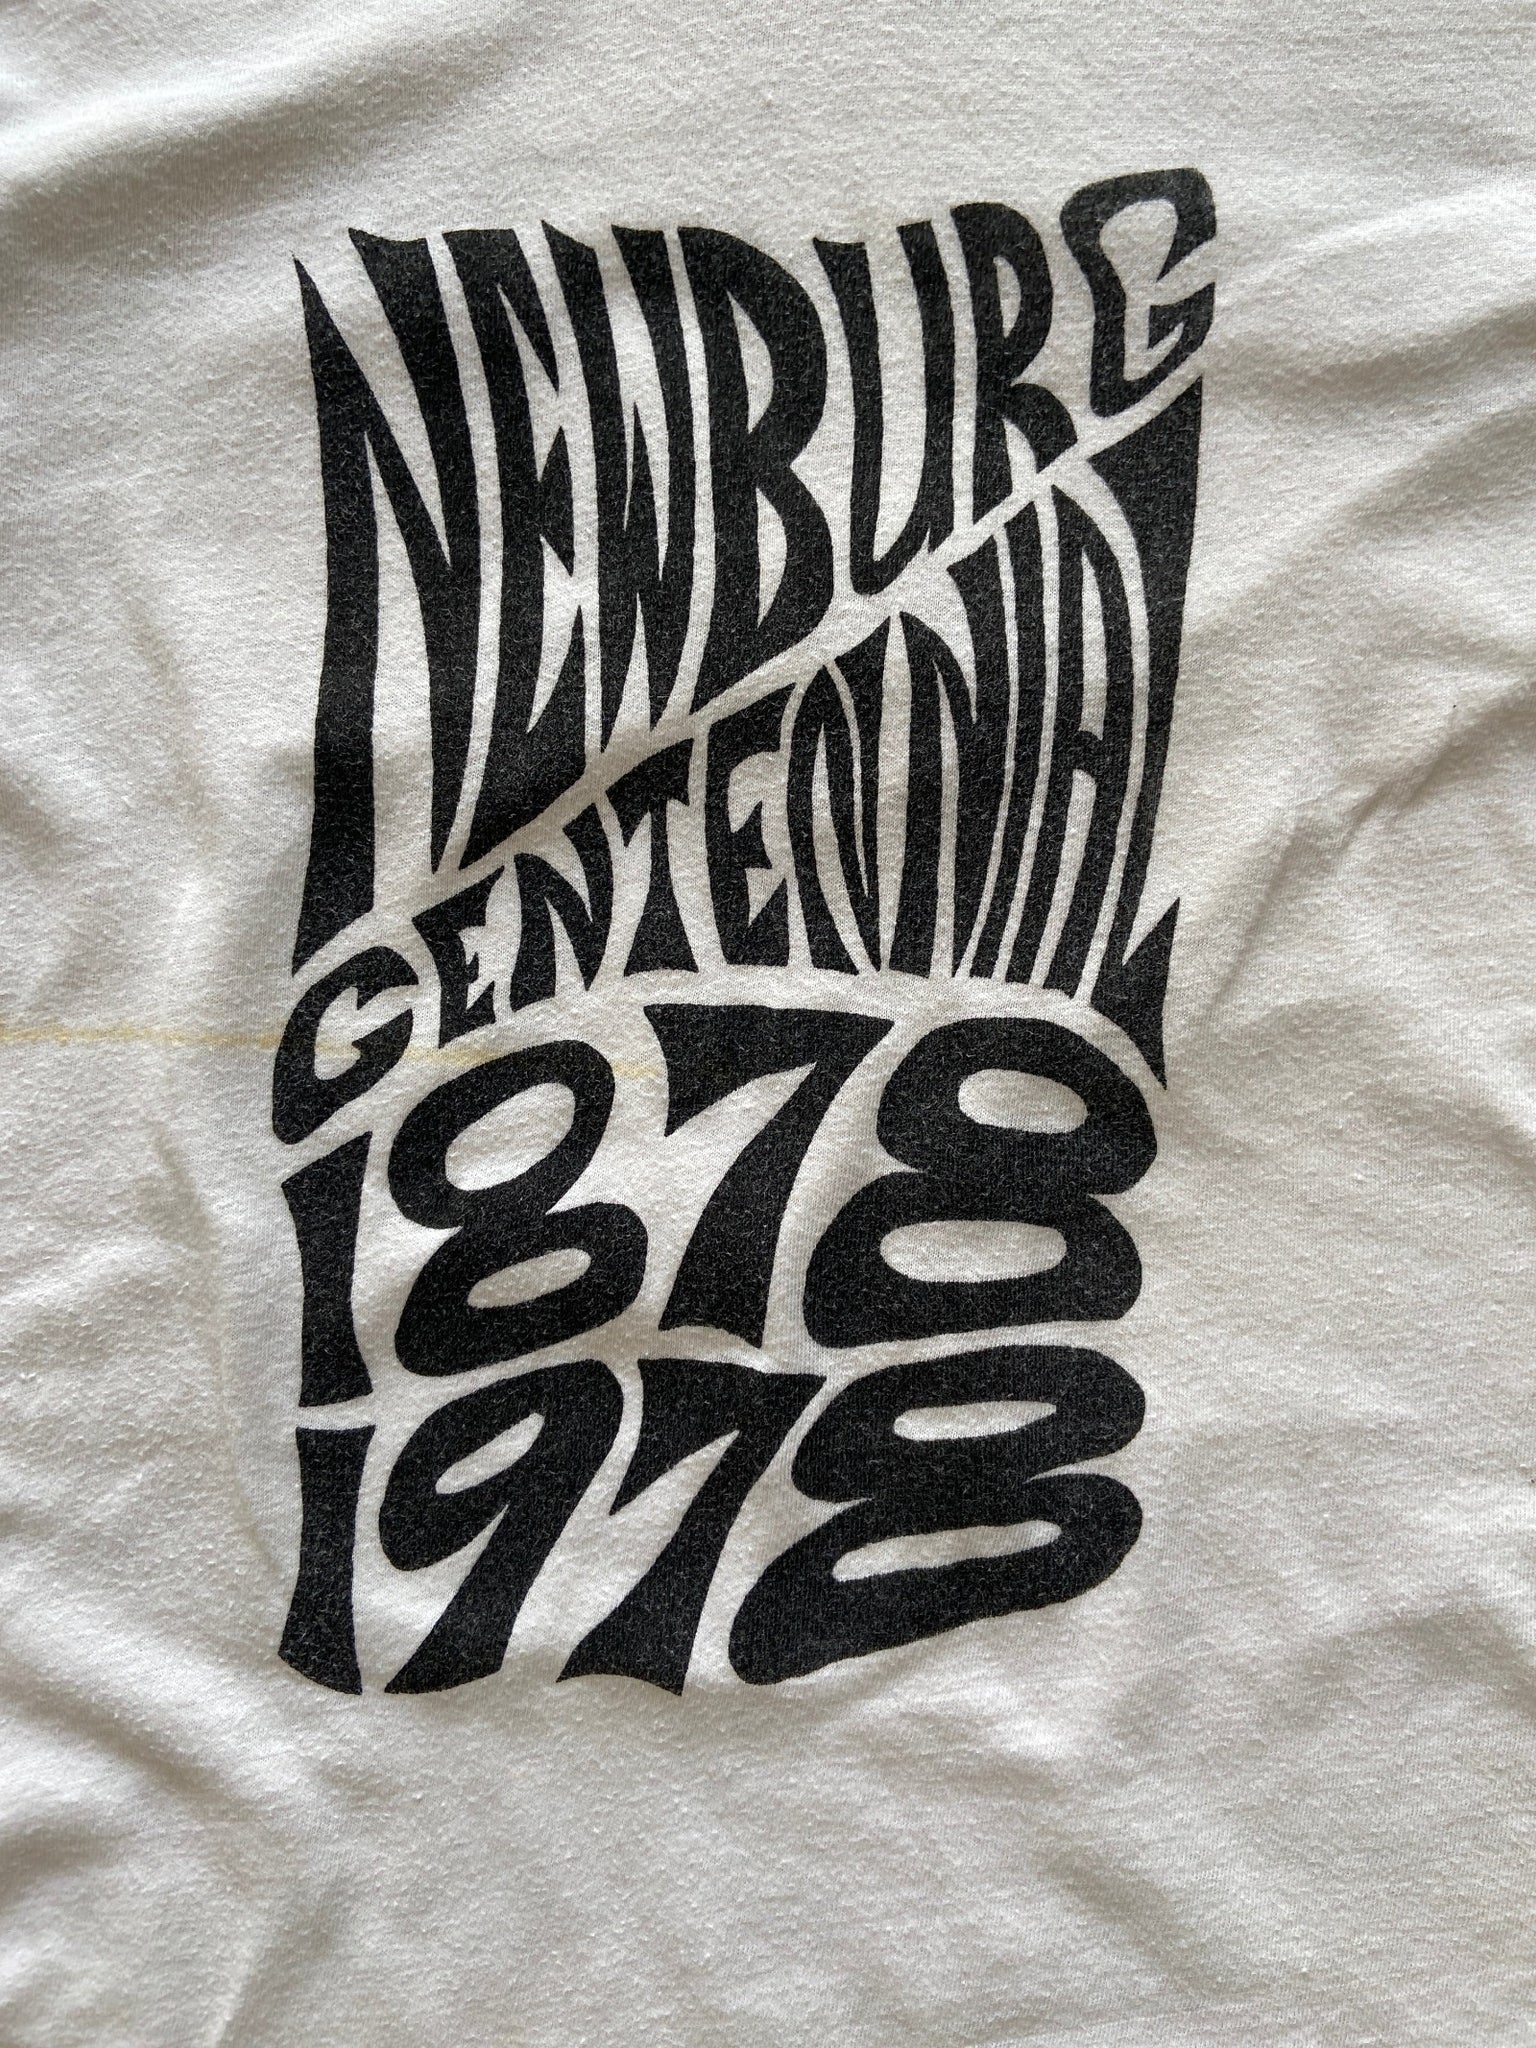 1978 Newburg Centennial Book T-Shirt - M